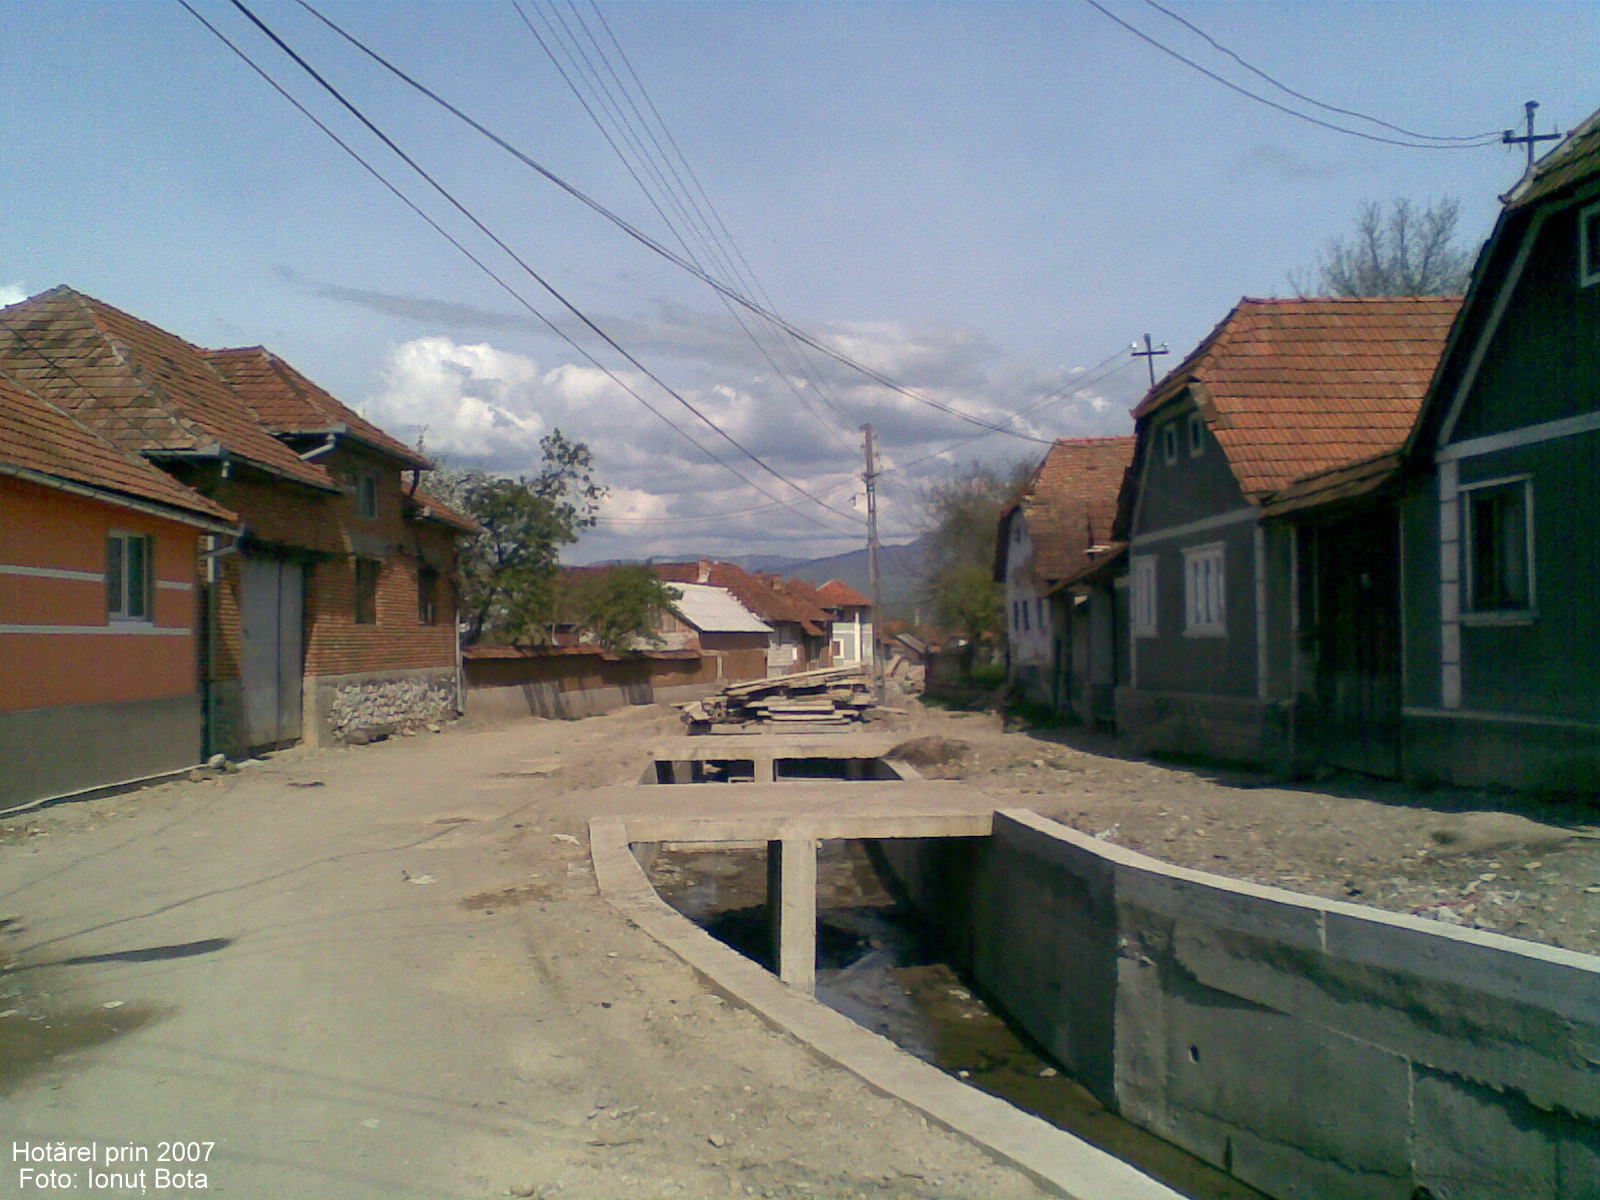 Hotarel, Bihor, Romania prin 2007 ; satul Hotarel comuna Lunca judetul Bihor Romania